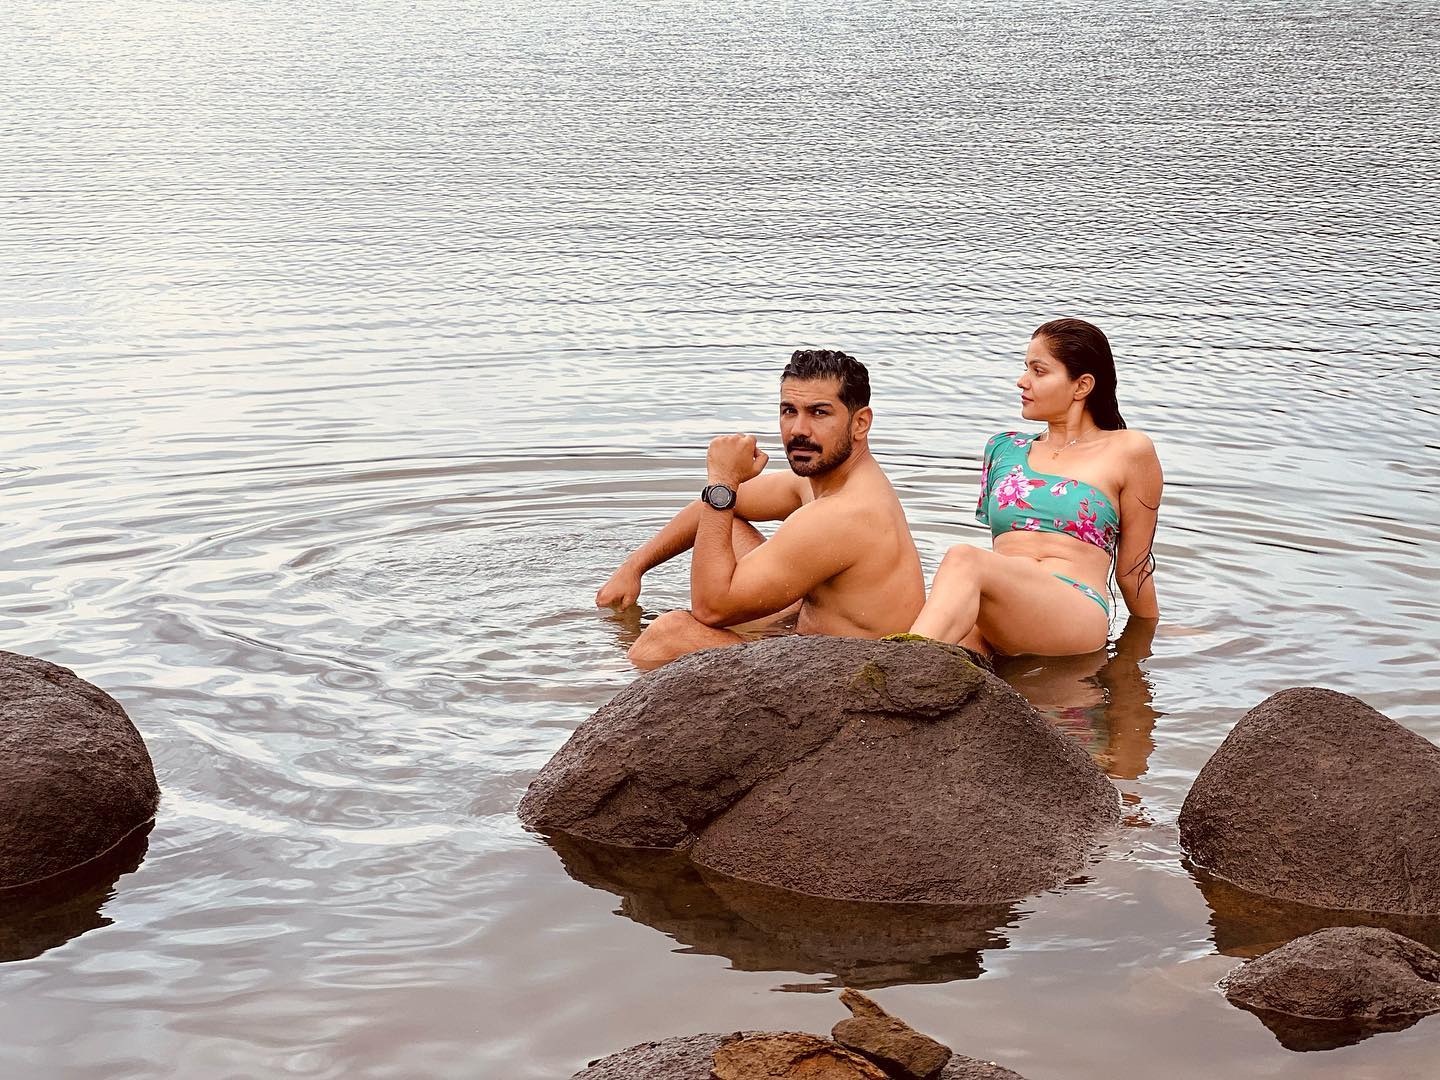 Rubina Dilaik shared bold photos in bikini